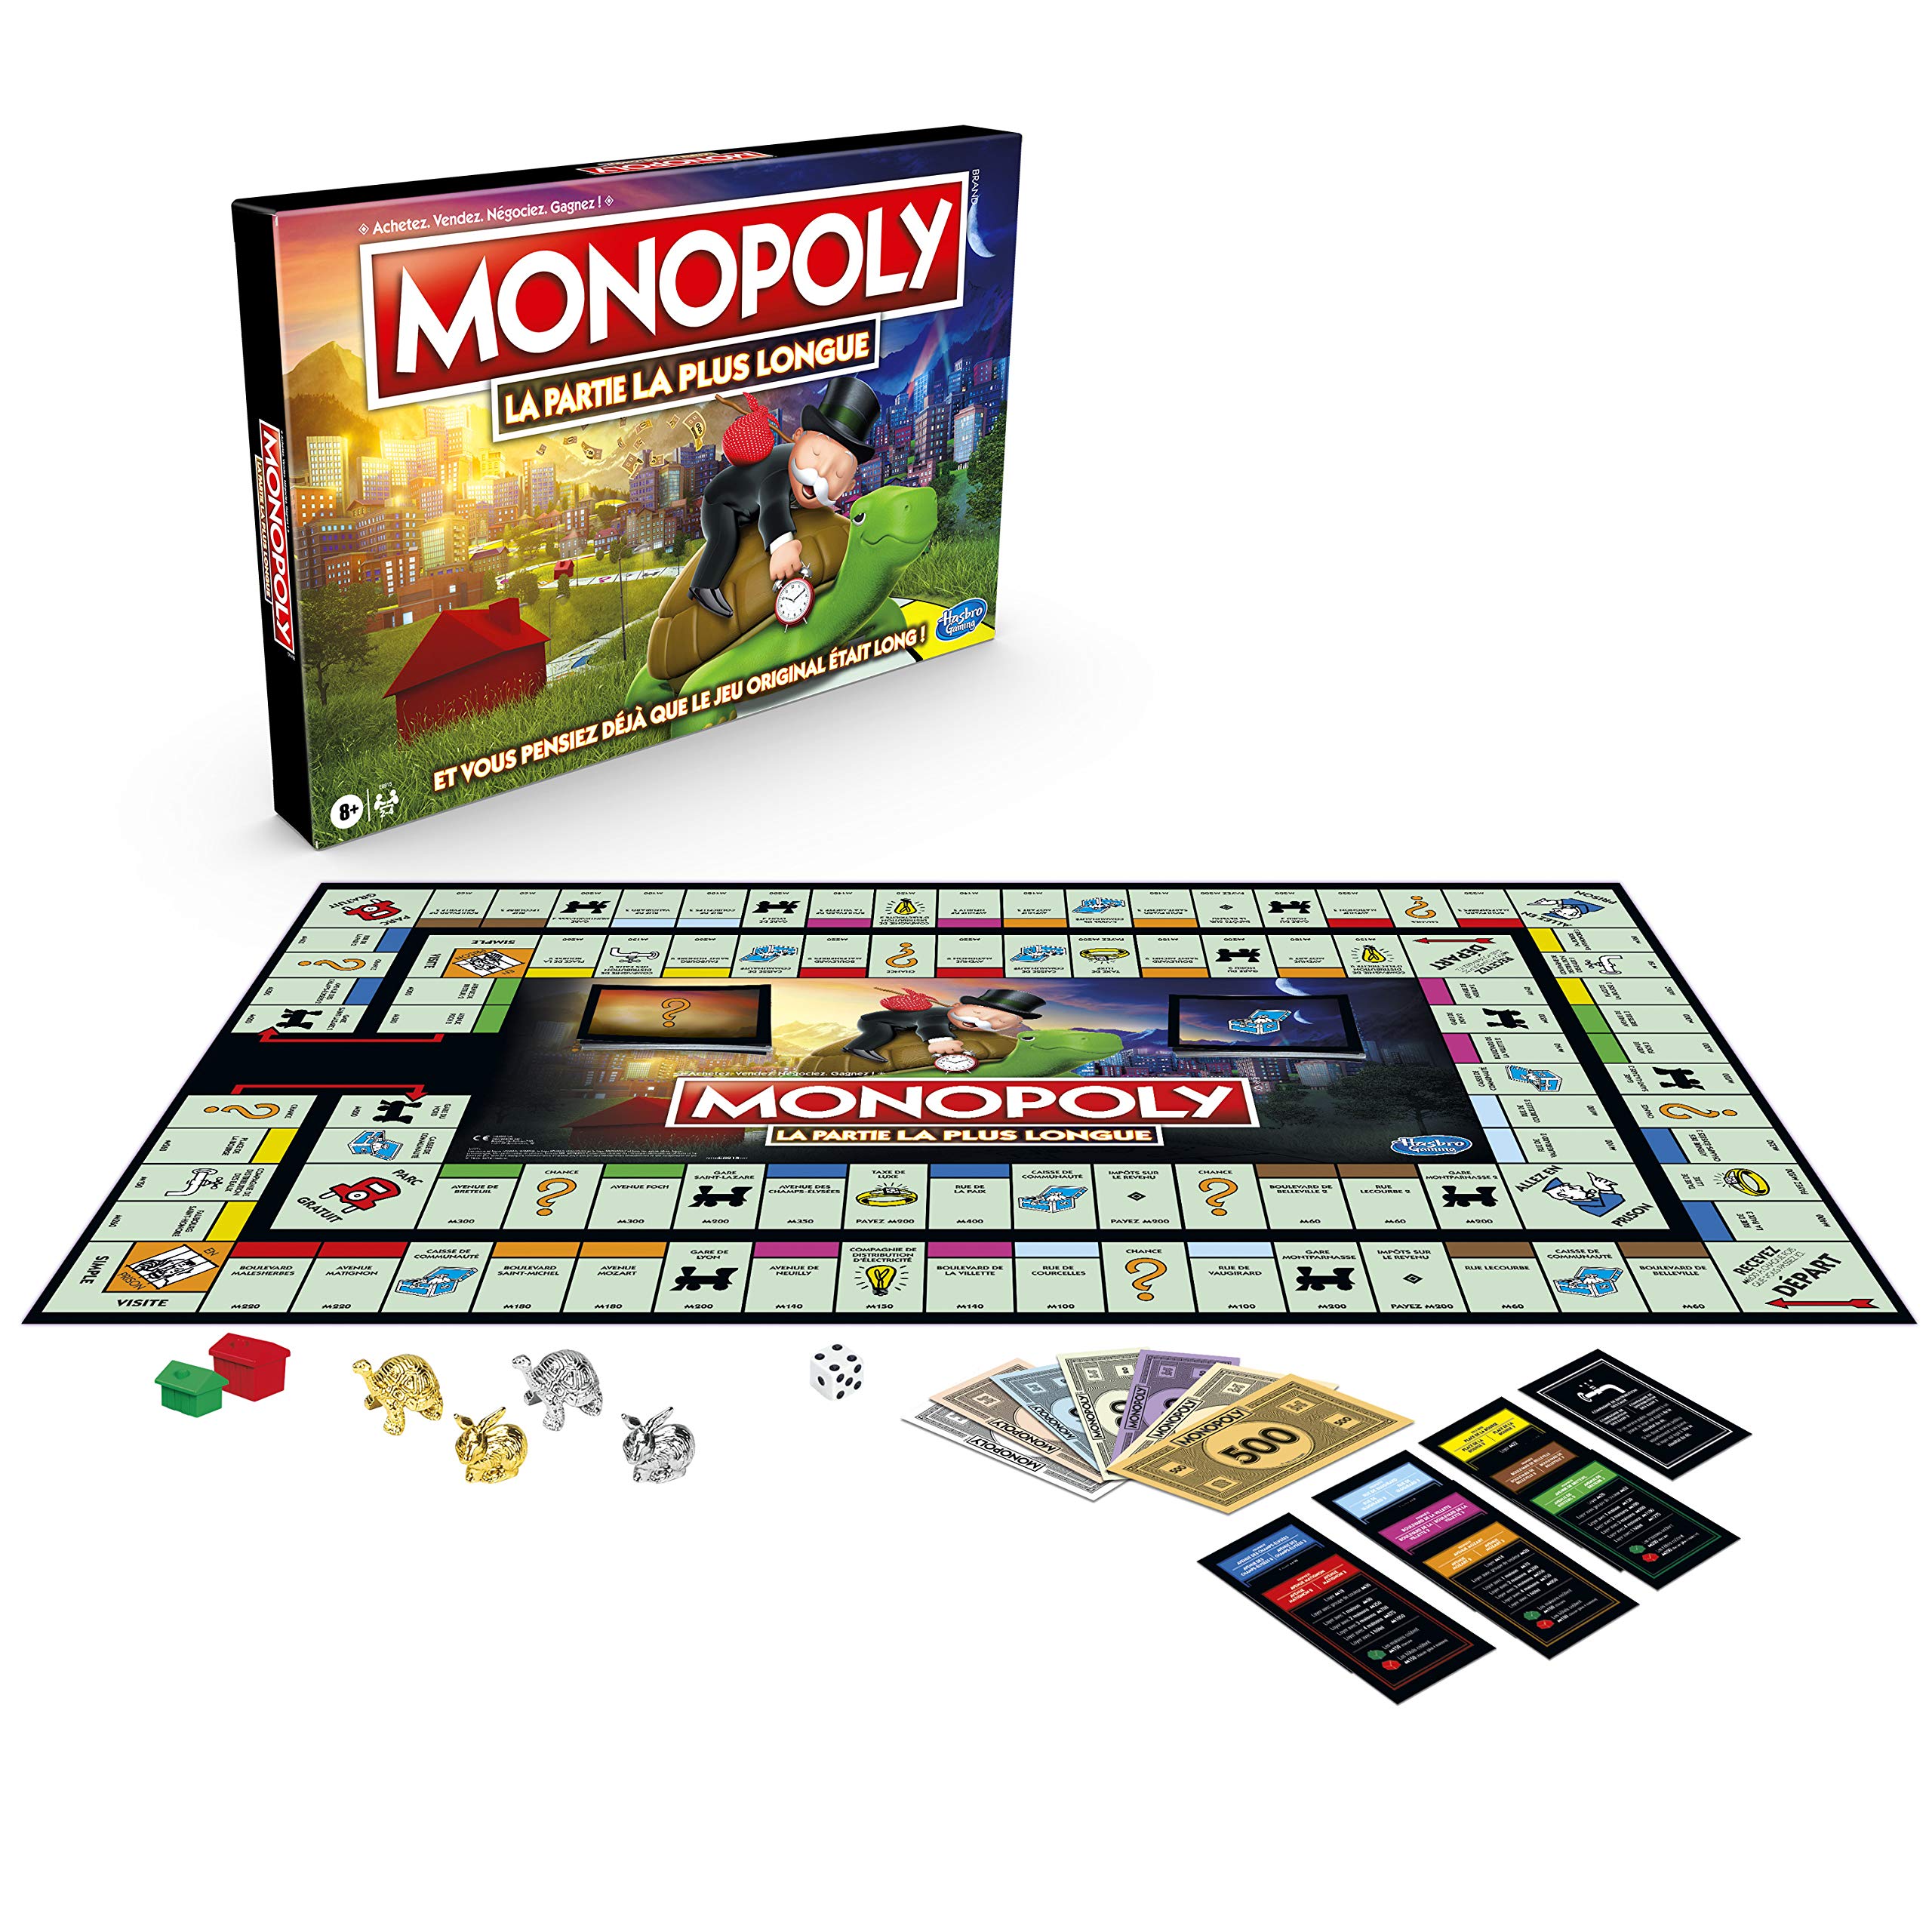 grand escompte Monopoly La Partie La Plus Longue - Jeu de Societe - Jeu de Plateau - 2 à 4 joueurs - Version Française FOdS7jLyC Outlet Shop 